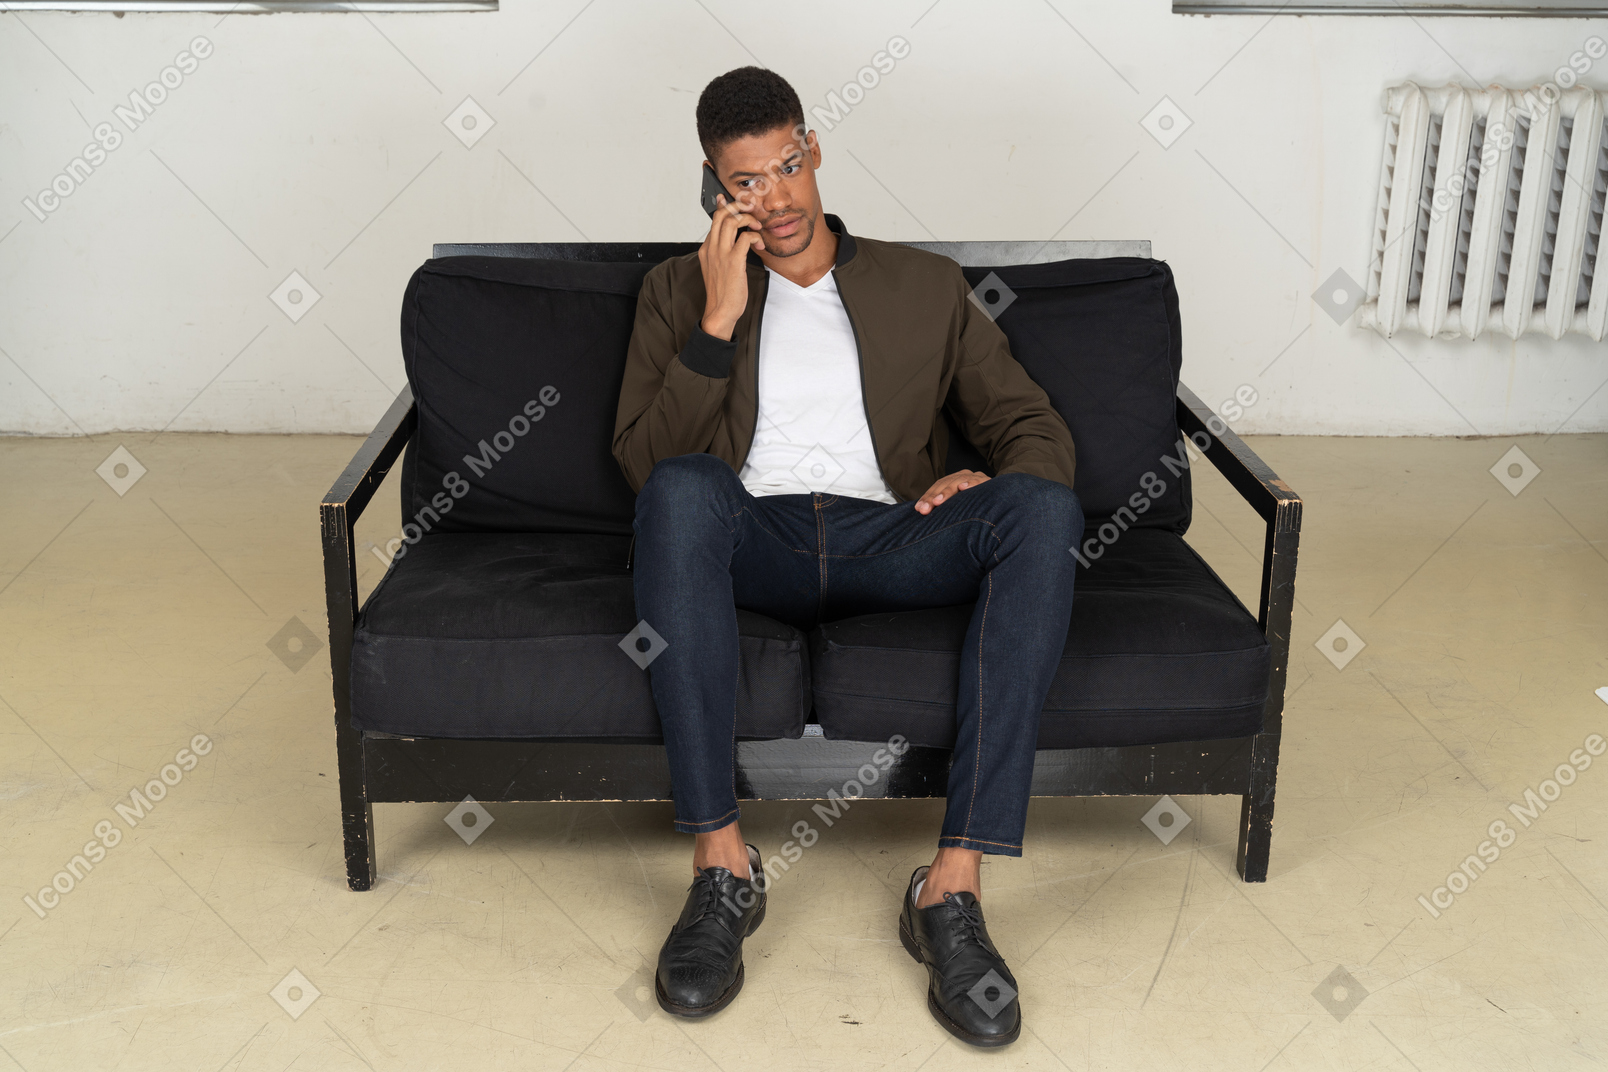 Vista frontal de un joven perplejo sentado en un sofá y hablando por su teléfono